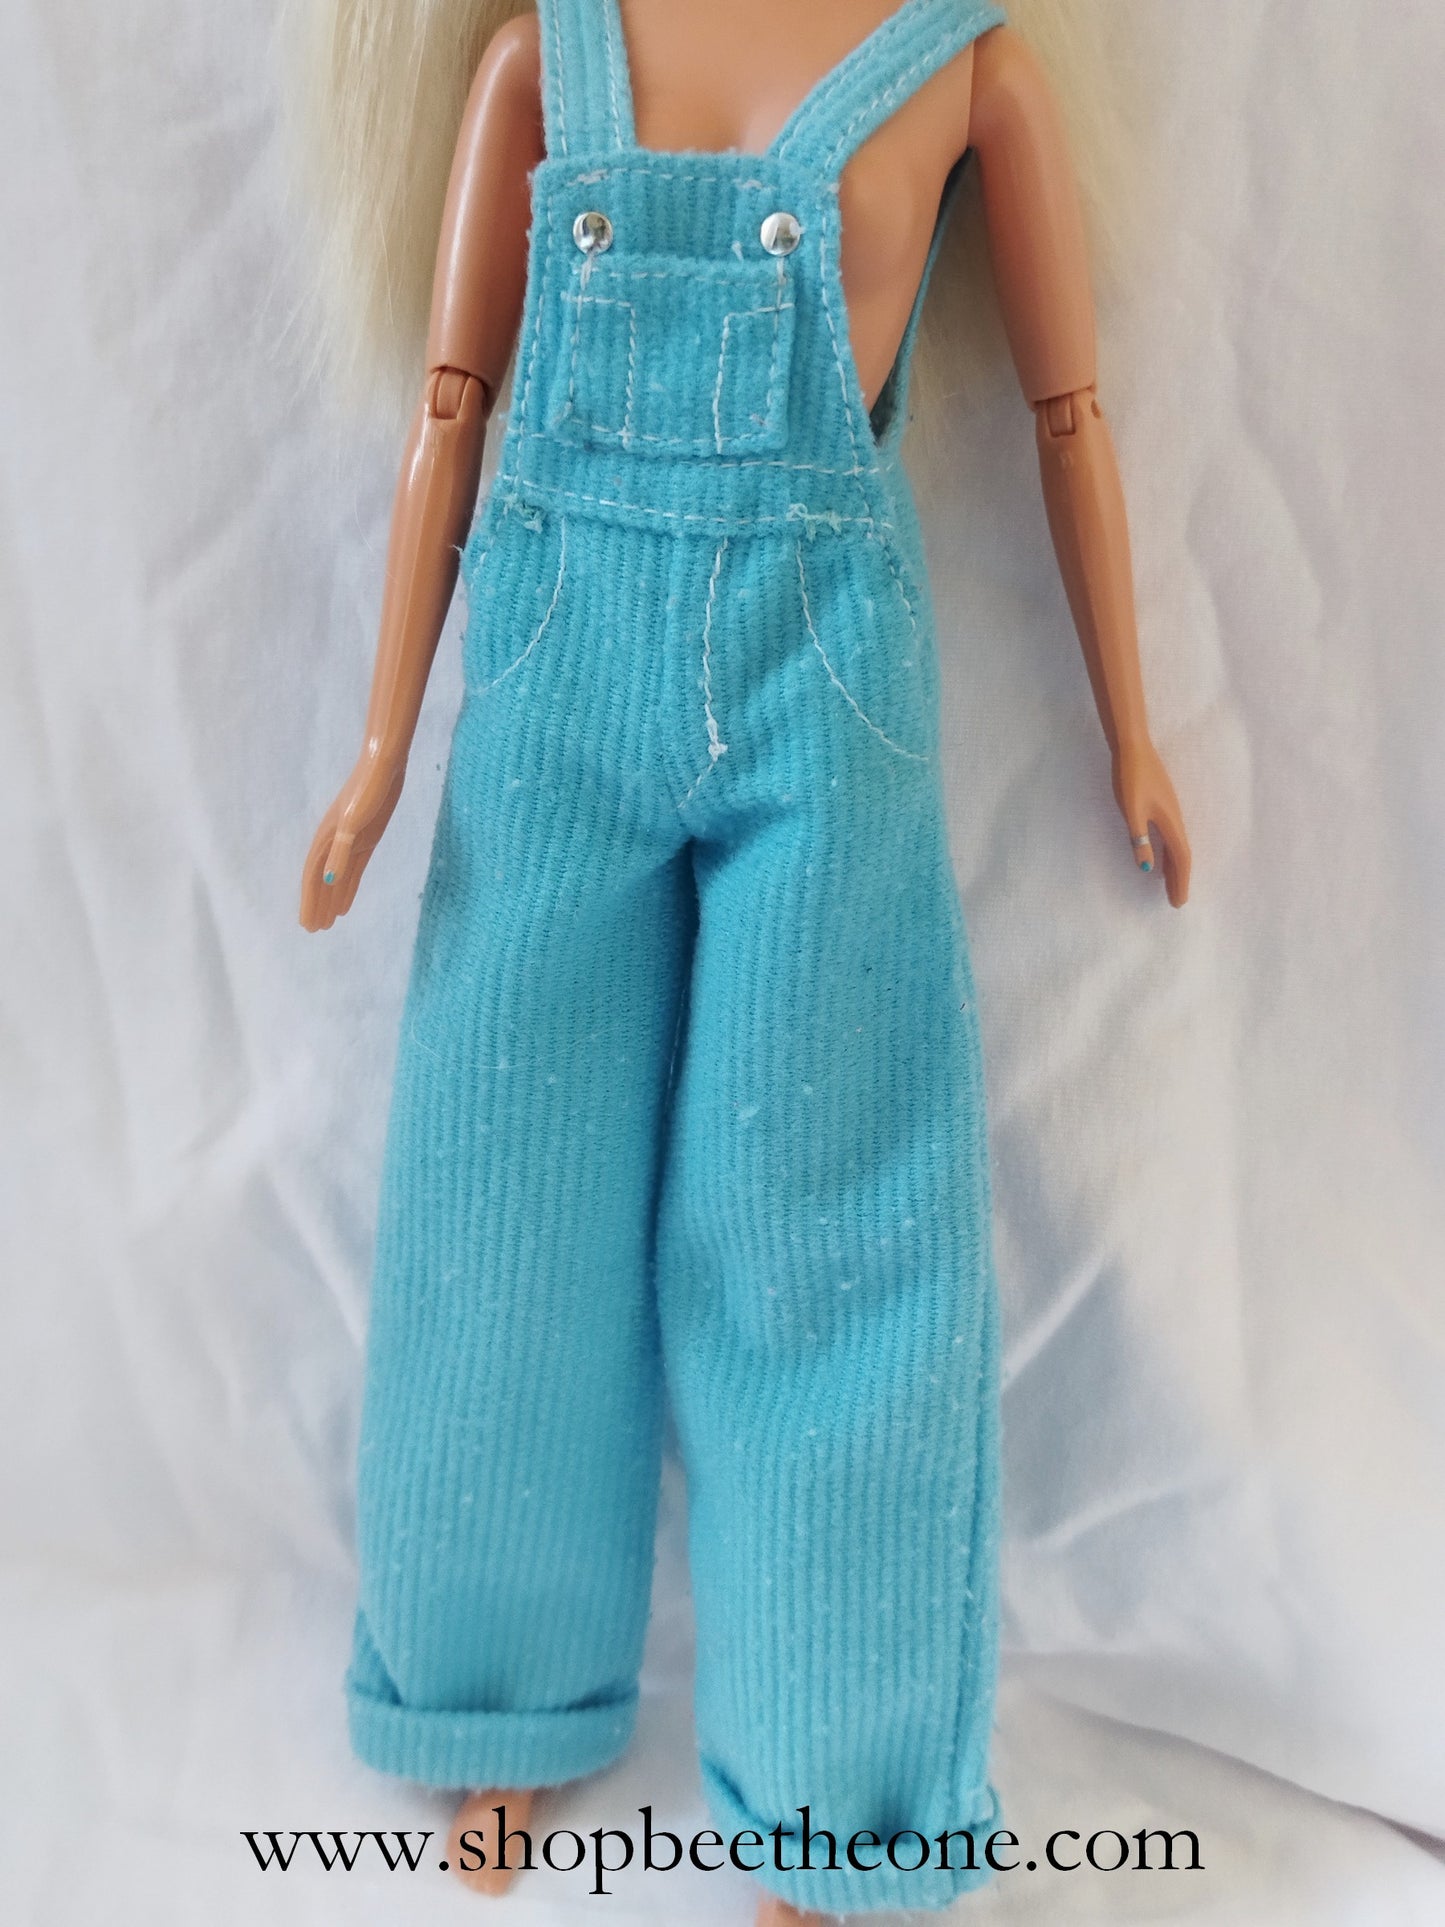 Barbie Cool Blue - Mattel 1997 - Poupée - vêtement